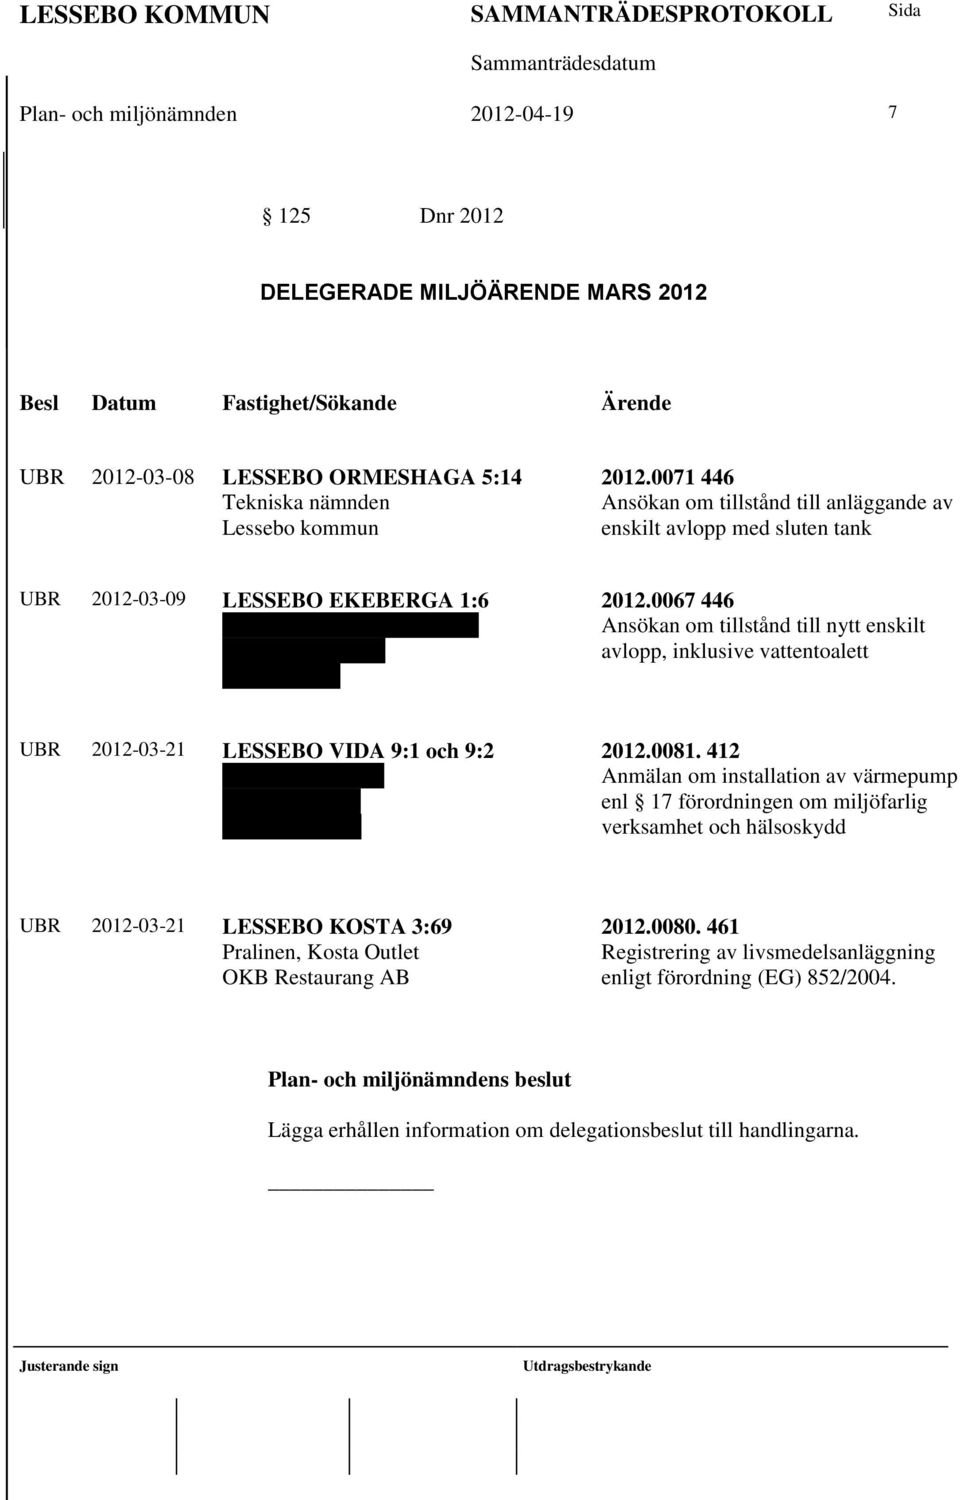 0067 446 Ansökan om tillstånd till nytt enskilt avlopp, inklusive vattentoalett UBR 2012-03-21 LESSEBO VIDA 9:1 och 9:2 Annikki Knutsson Värendsgatan 6 360 50 Lessebo 2012.0081.